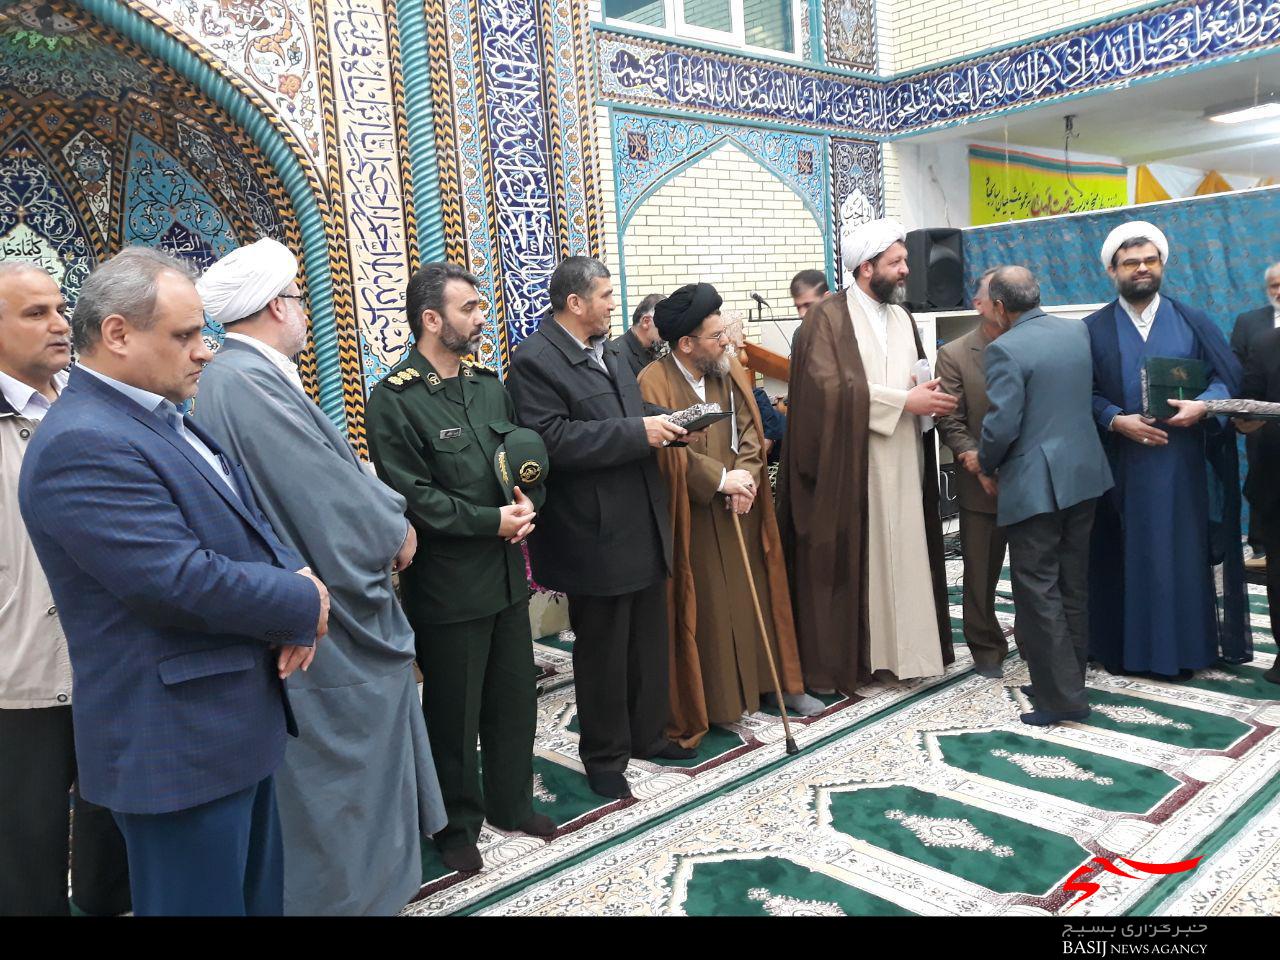 مسجد پیامبر اعظم(ص) شهرک امام خمینی فومن افتتاح شد+تصاویر